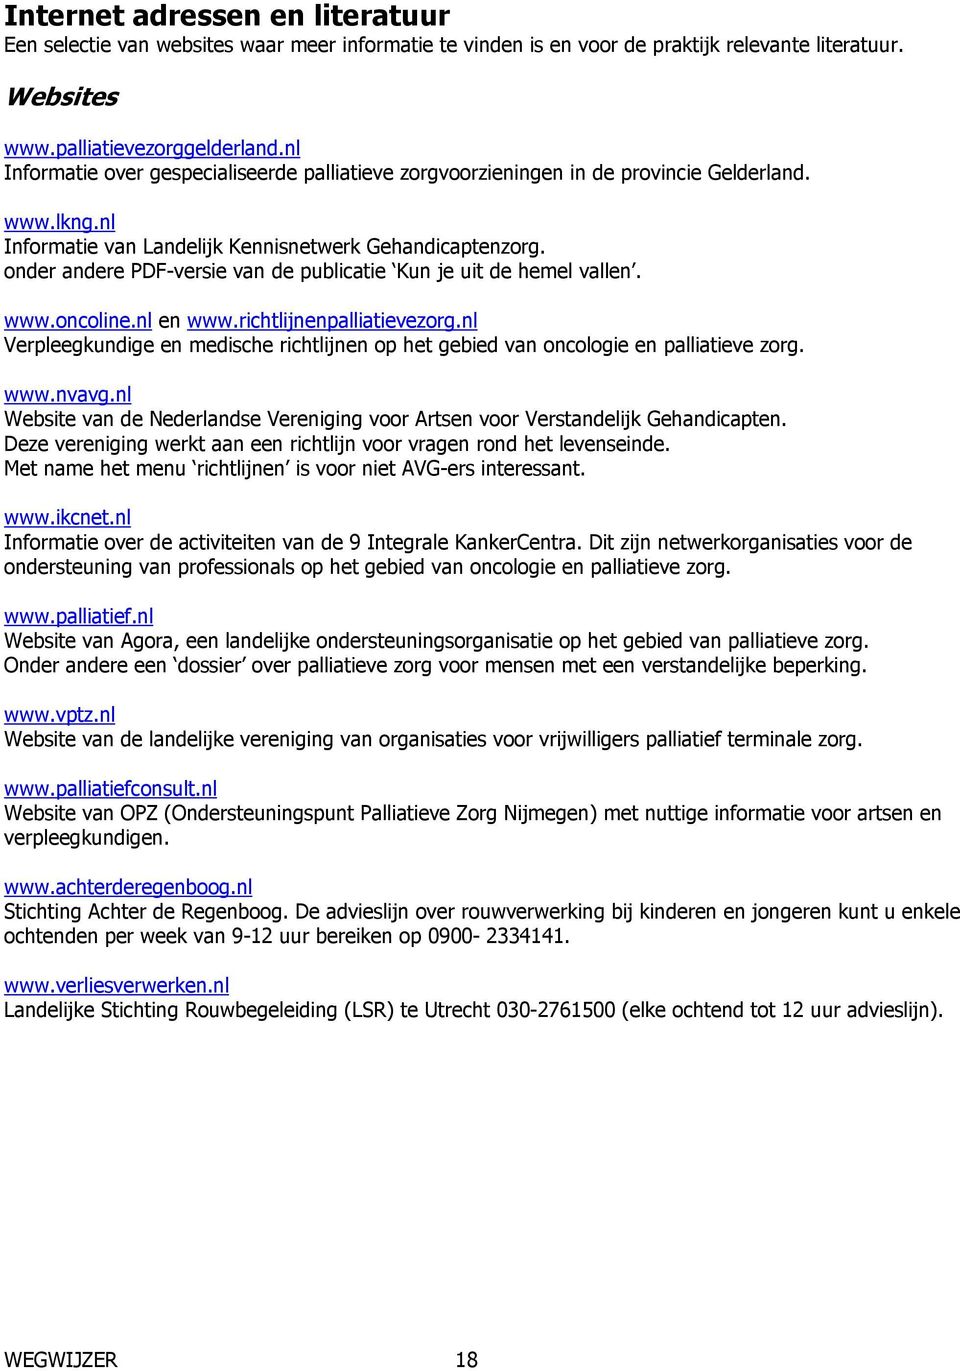 onder andere PDF-versie van de publicatie Kun je uit de hemel vallen. www.oncoline.nl en www.richtlijnenpalliatievezorg.